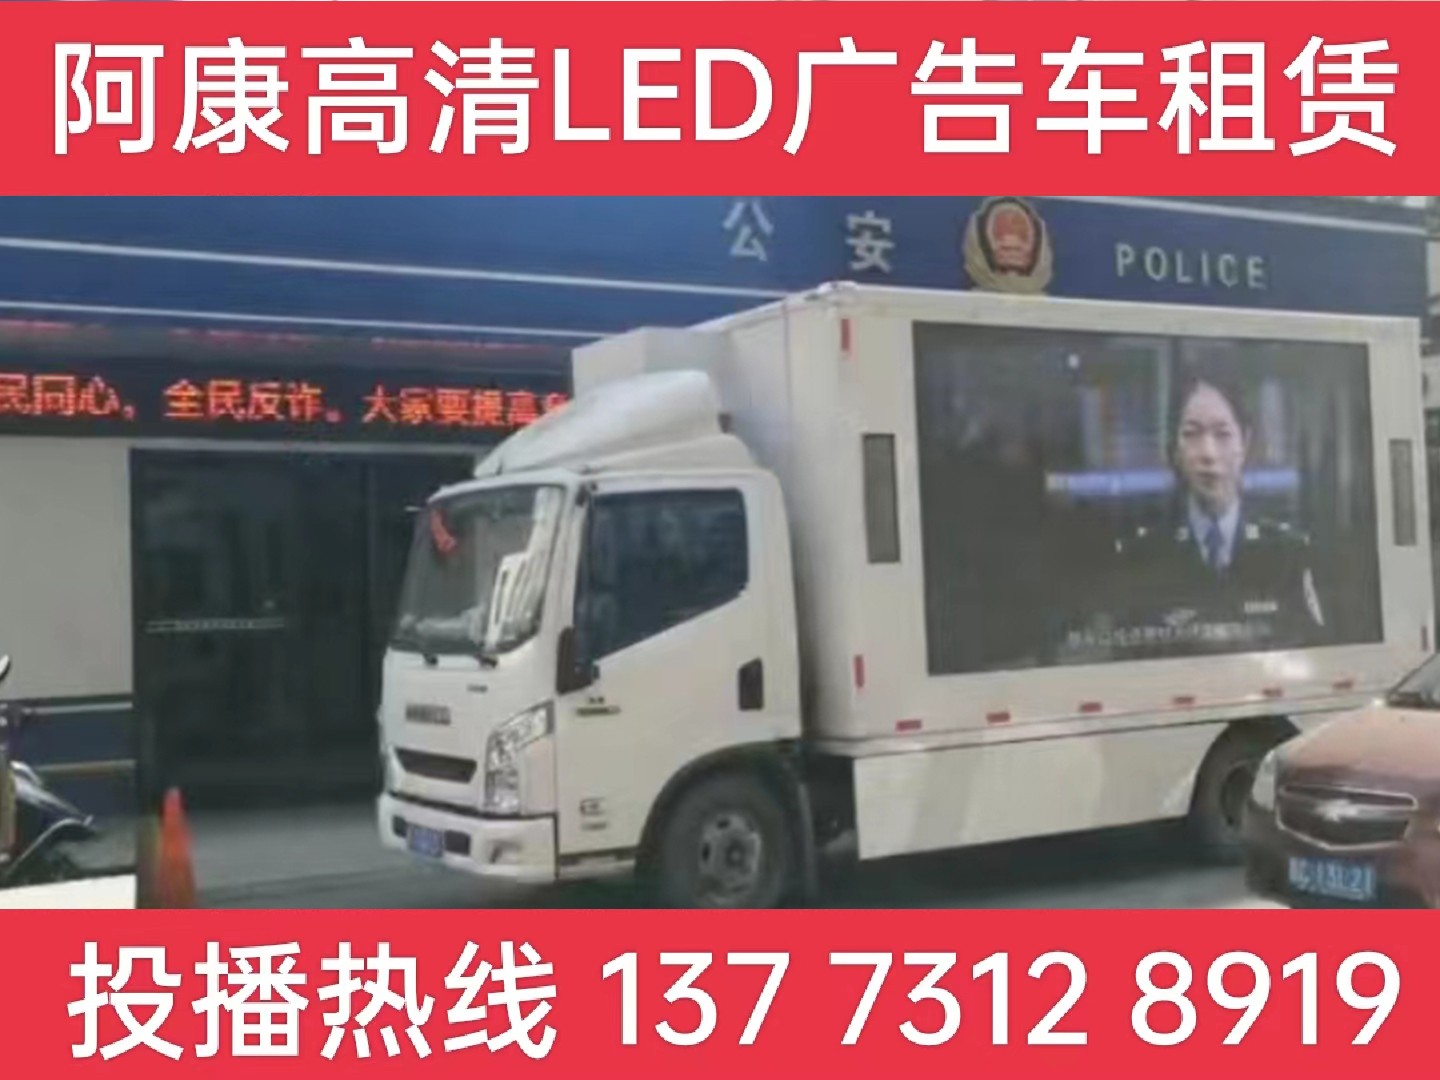 金湖县LED广告车租赁-反诈宣传